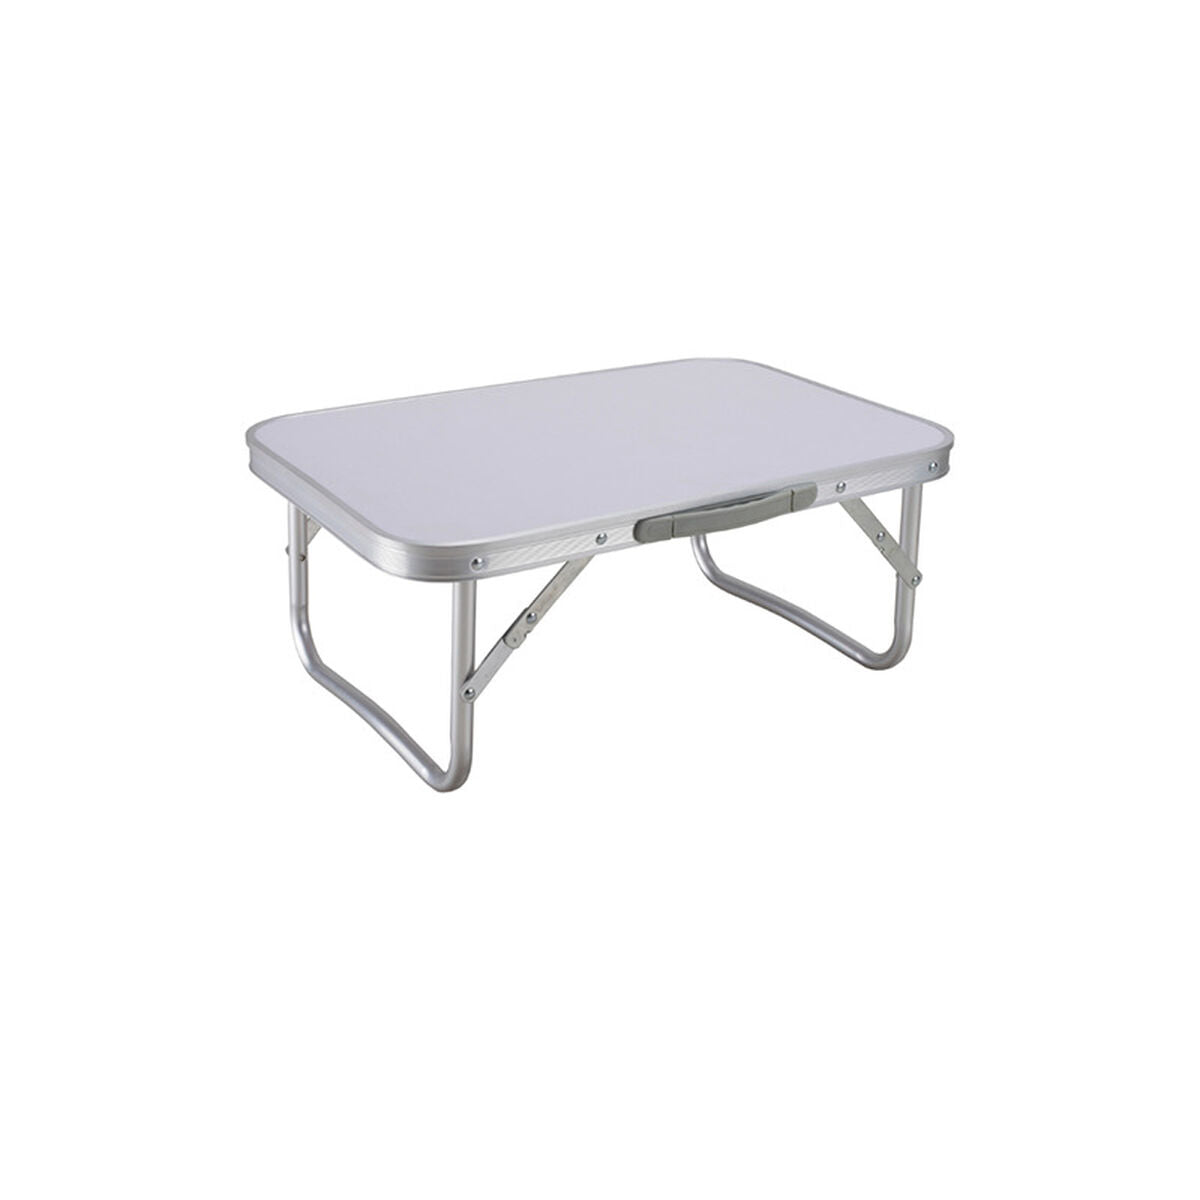 Folding Table Marbueno 56 x 24,5 x 34 cm Multicolour